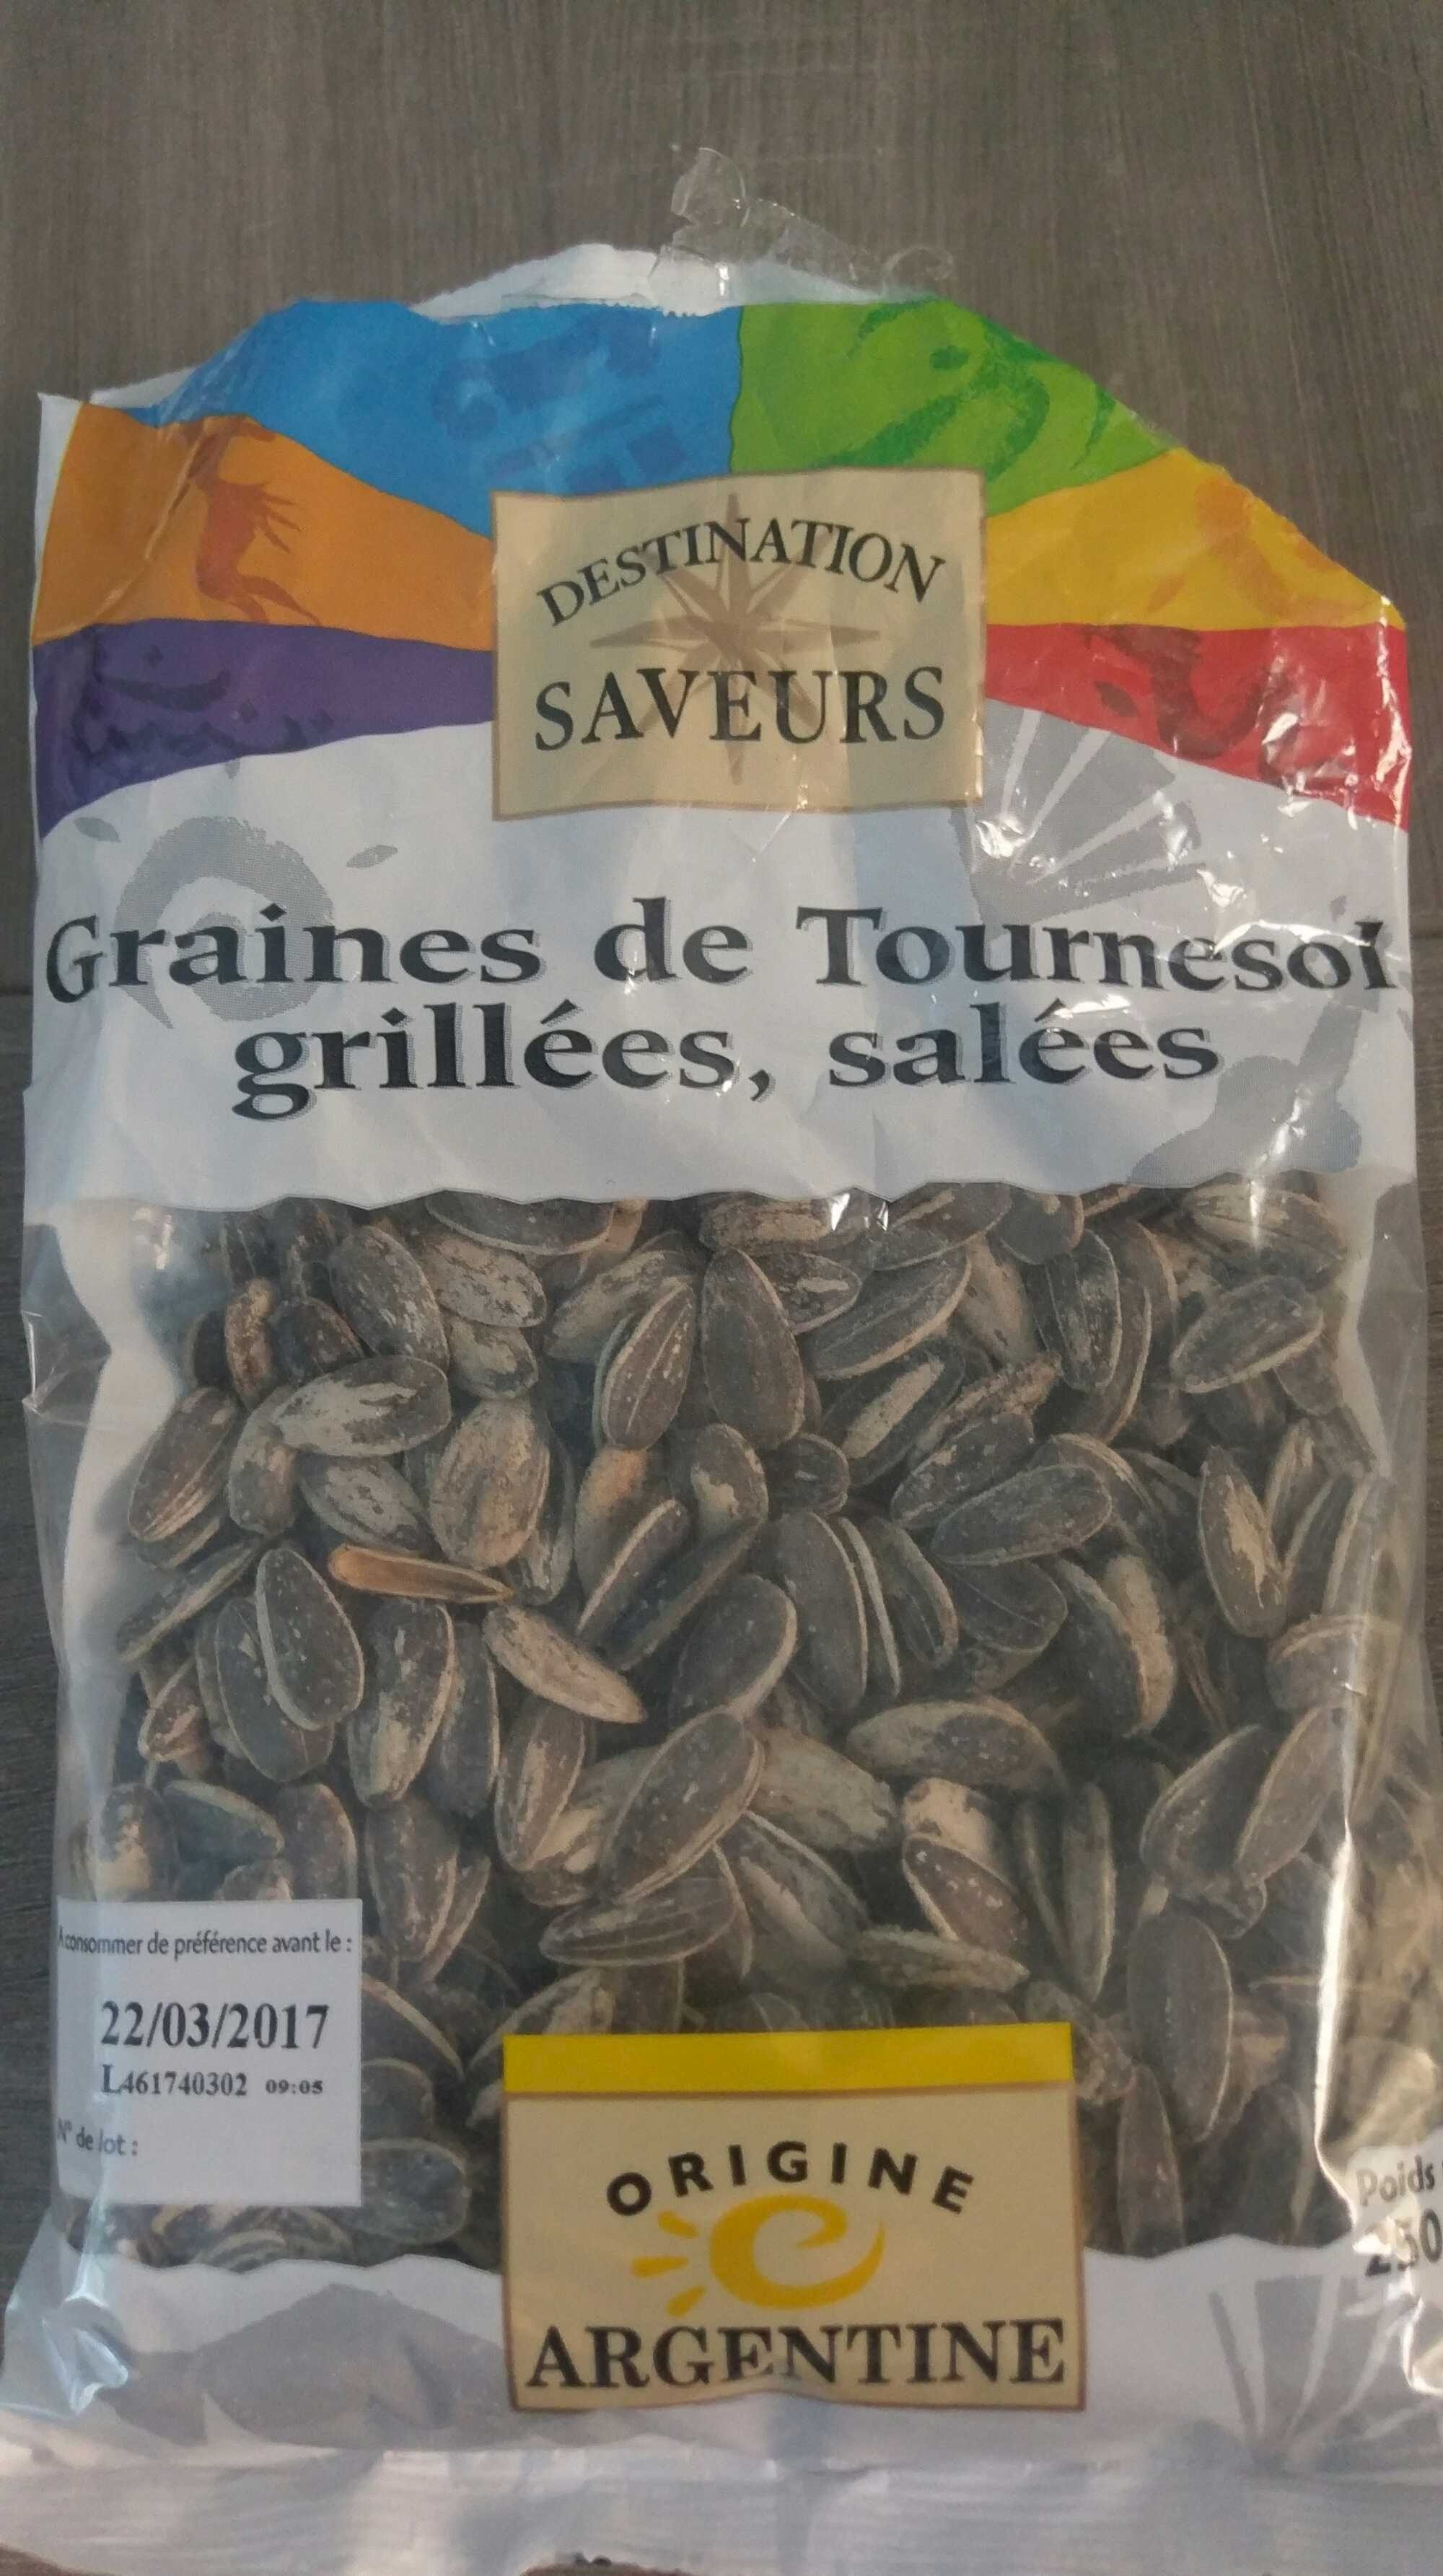 Graines de Tournesol Grillées, Salées - Product - fr